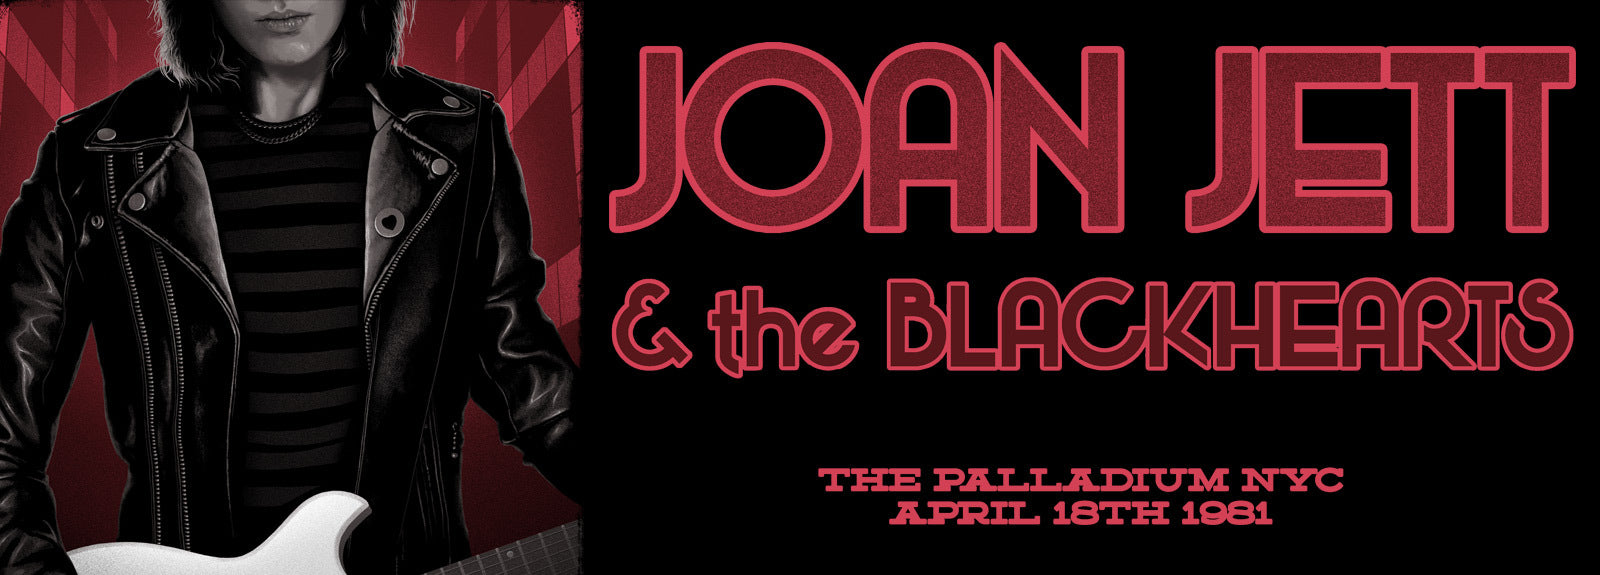 Joan Jett and The Blackhearts New York City 1981